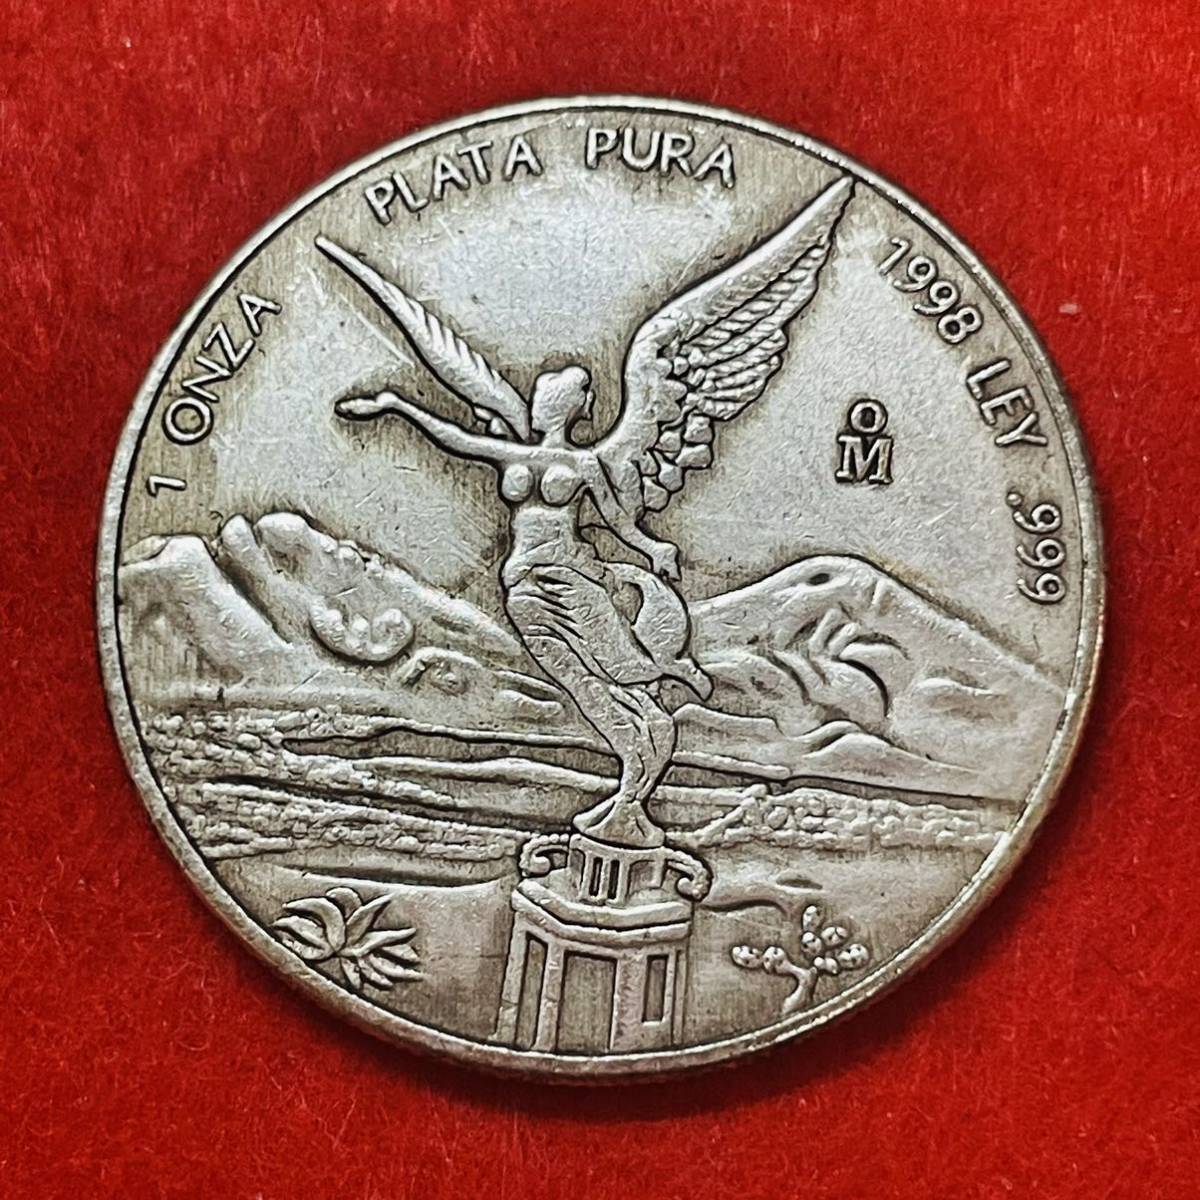 メキシコ 硬貨 古銭 1998年 翼のある女神 「メキシコ合衆国」銘 ポポカテペトル火山 イスタクシウアトル火山 記念幣 コイン 重さ26.53g_画像1